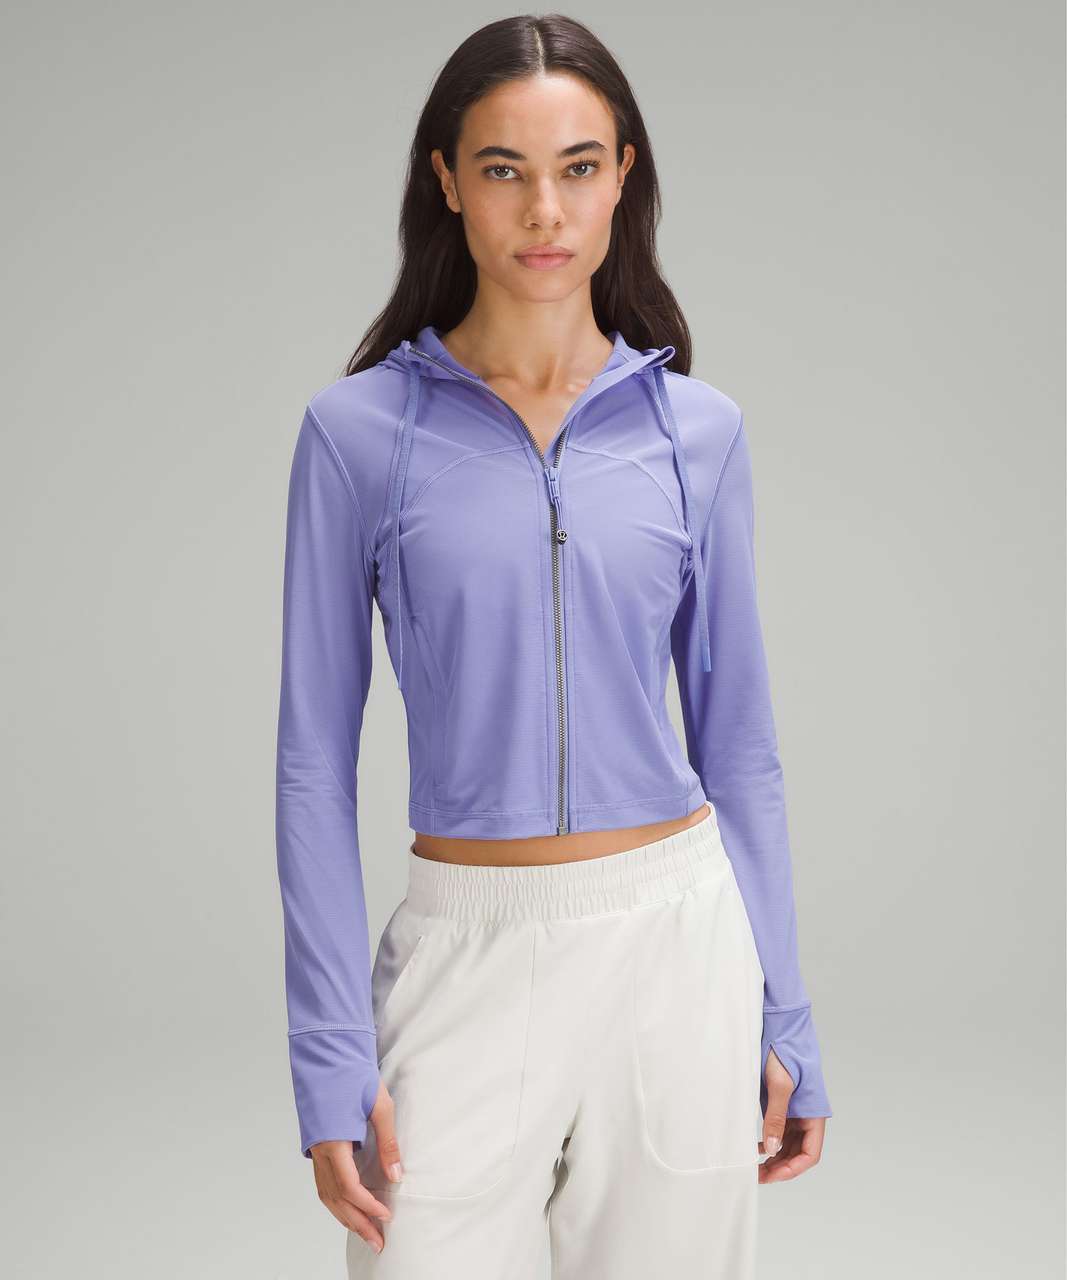 Lululemon Define Lavender Purple Jacket size 8